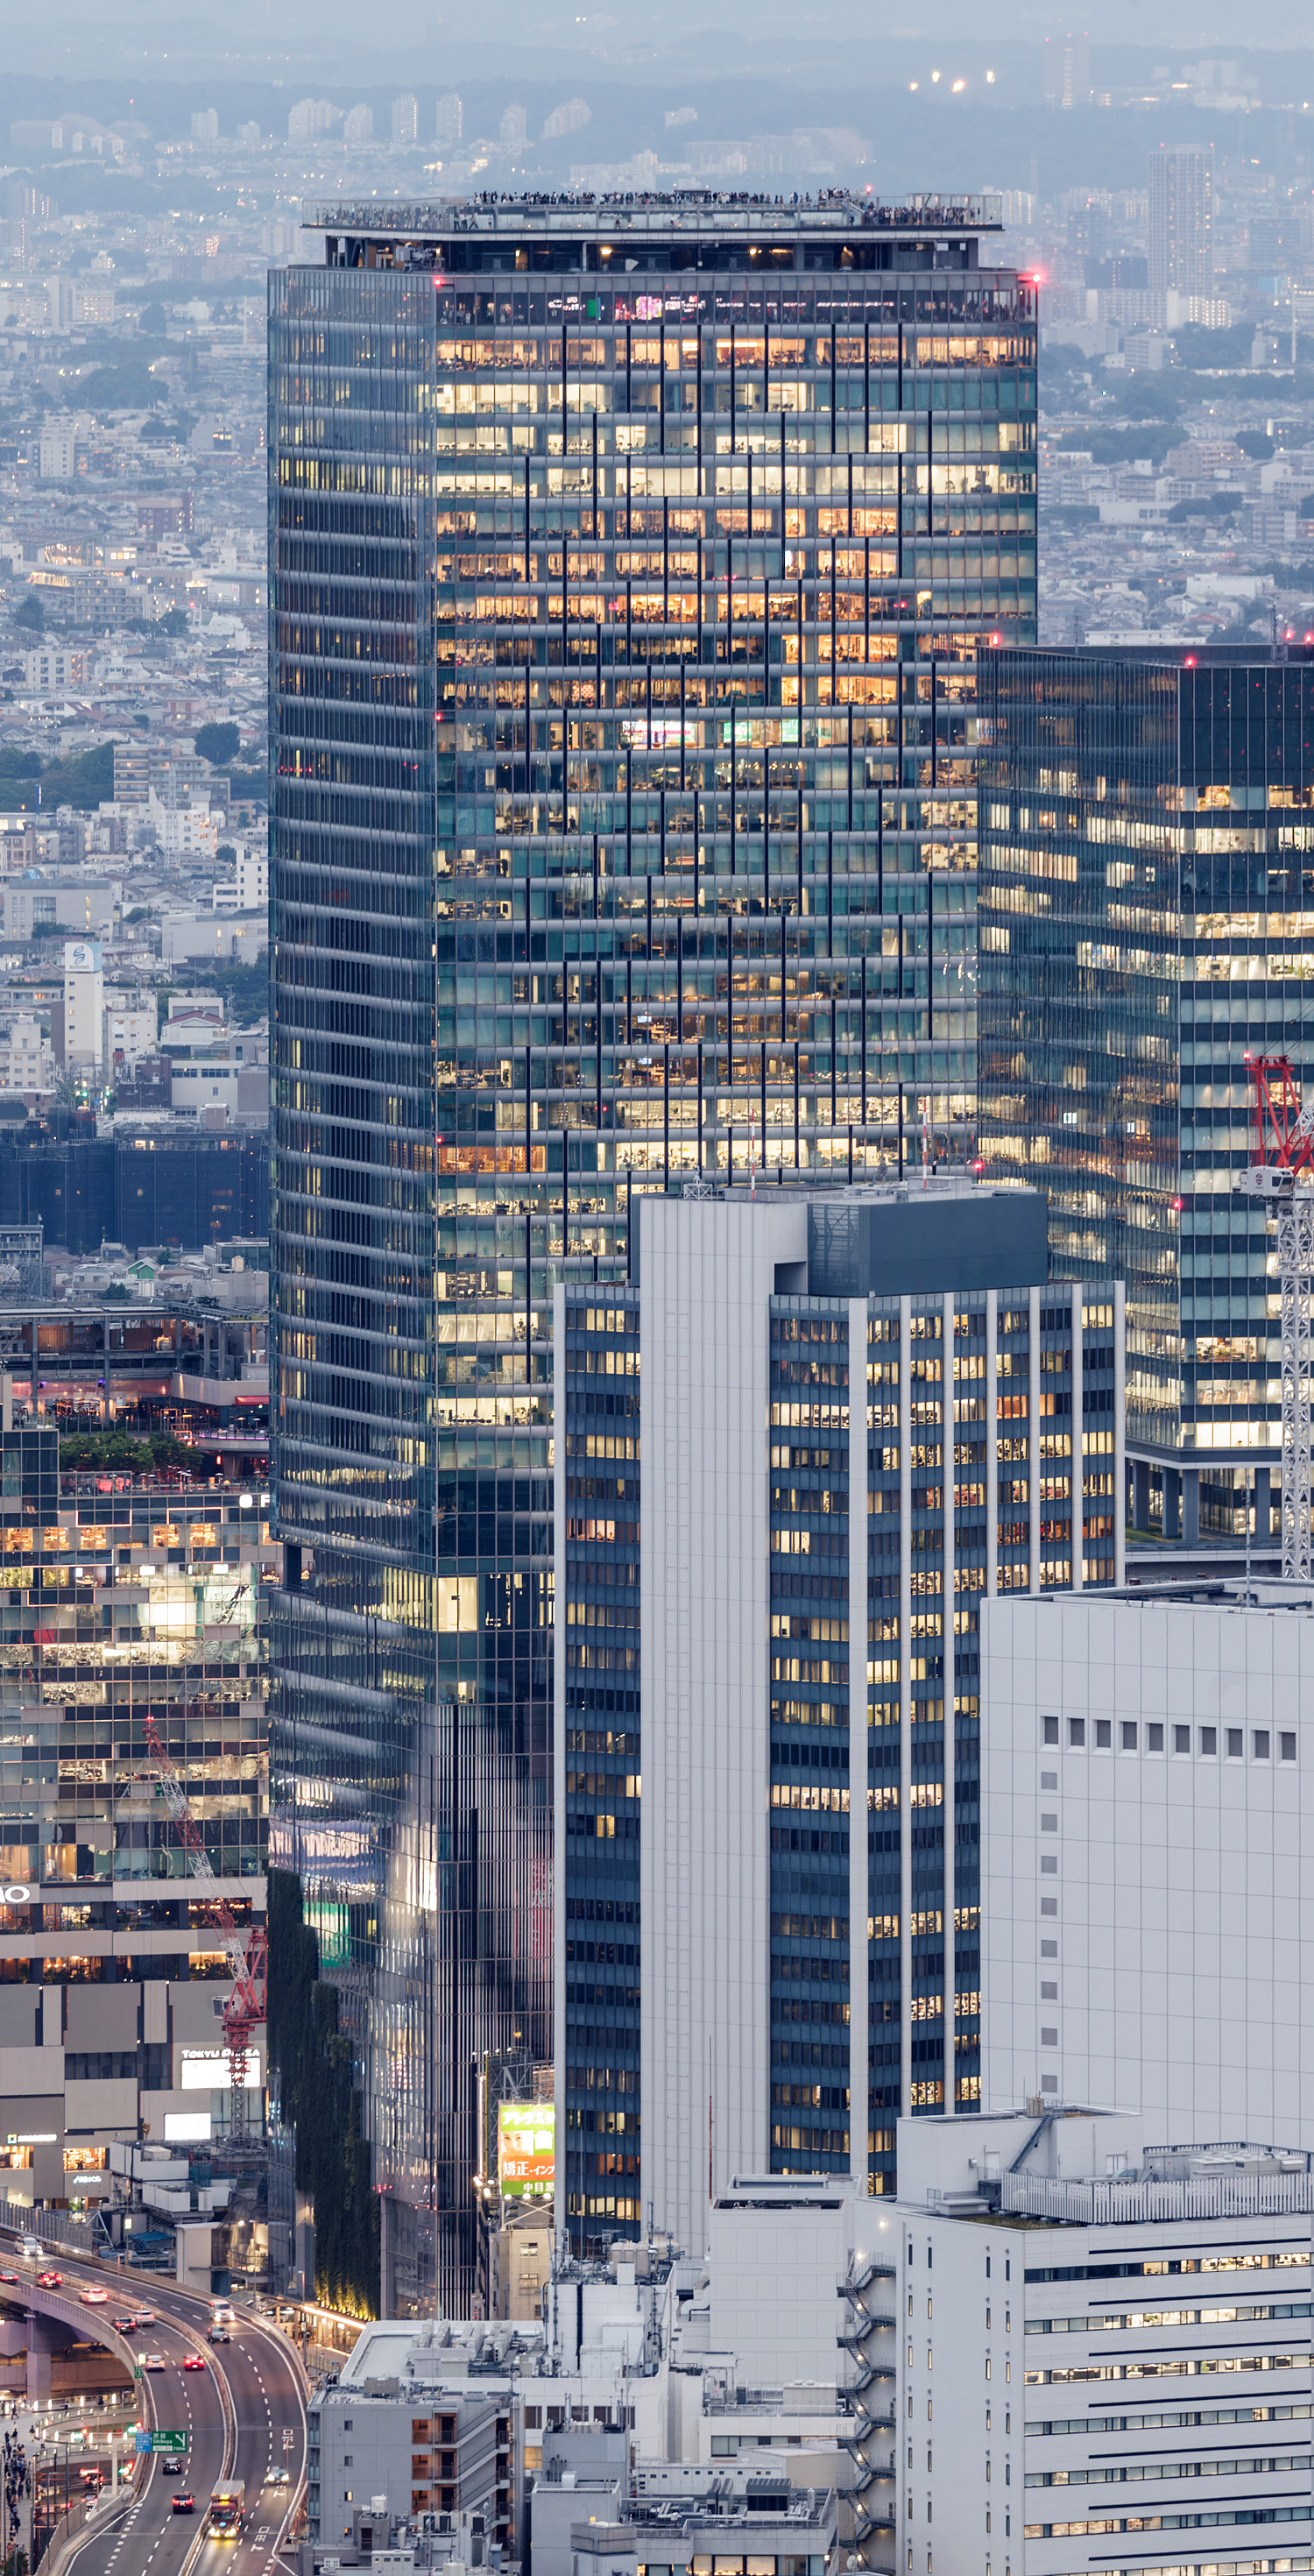 Shibuya Scramble Square, Tokyo - View from Roppongi Hills Mori Tower. © Mathias Beinling